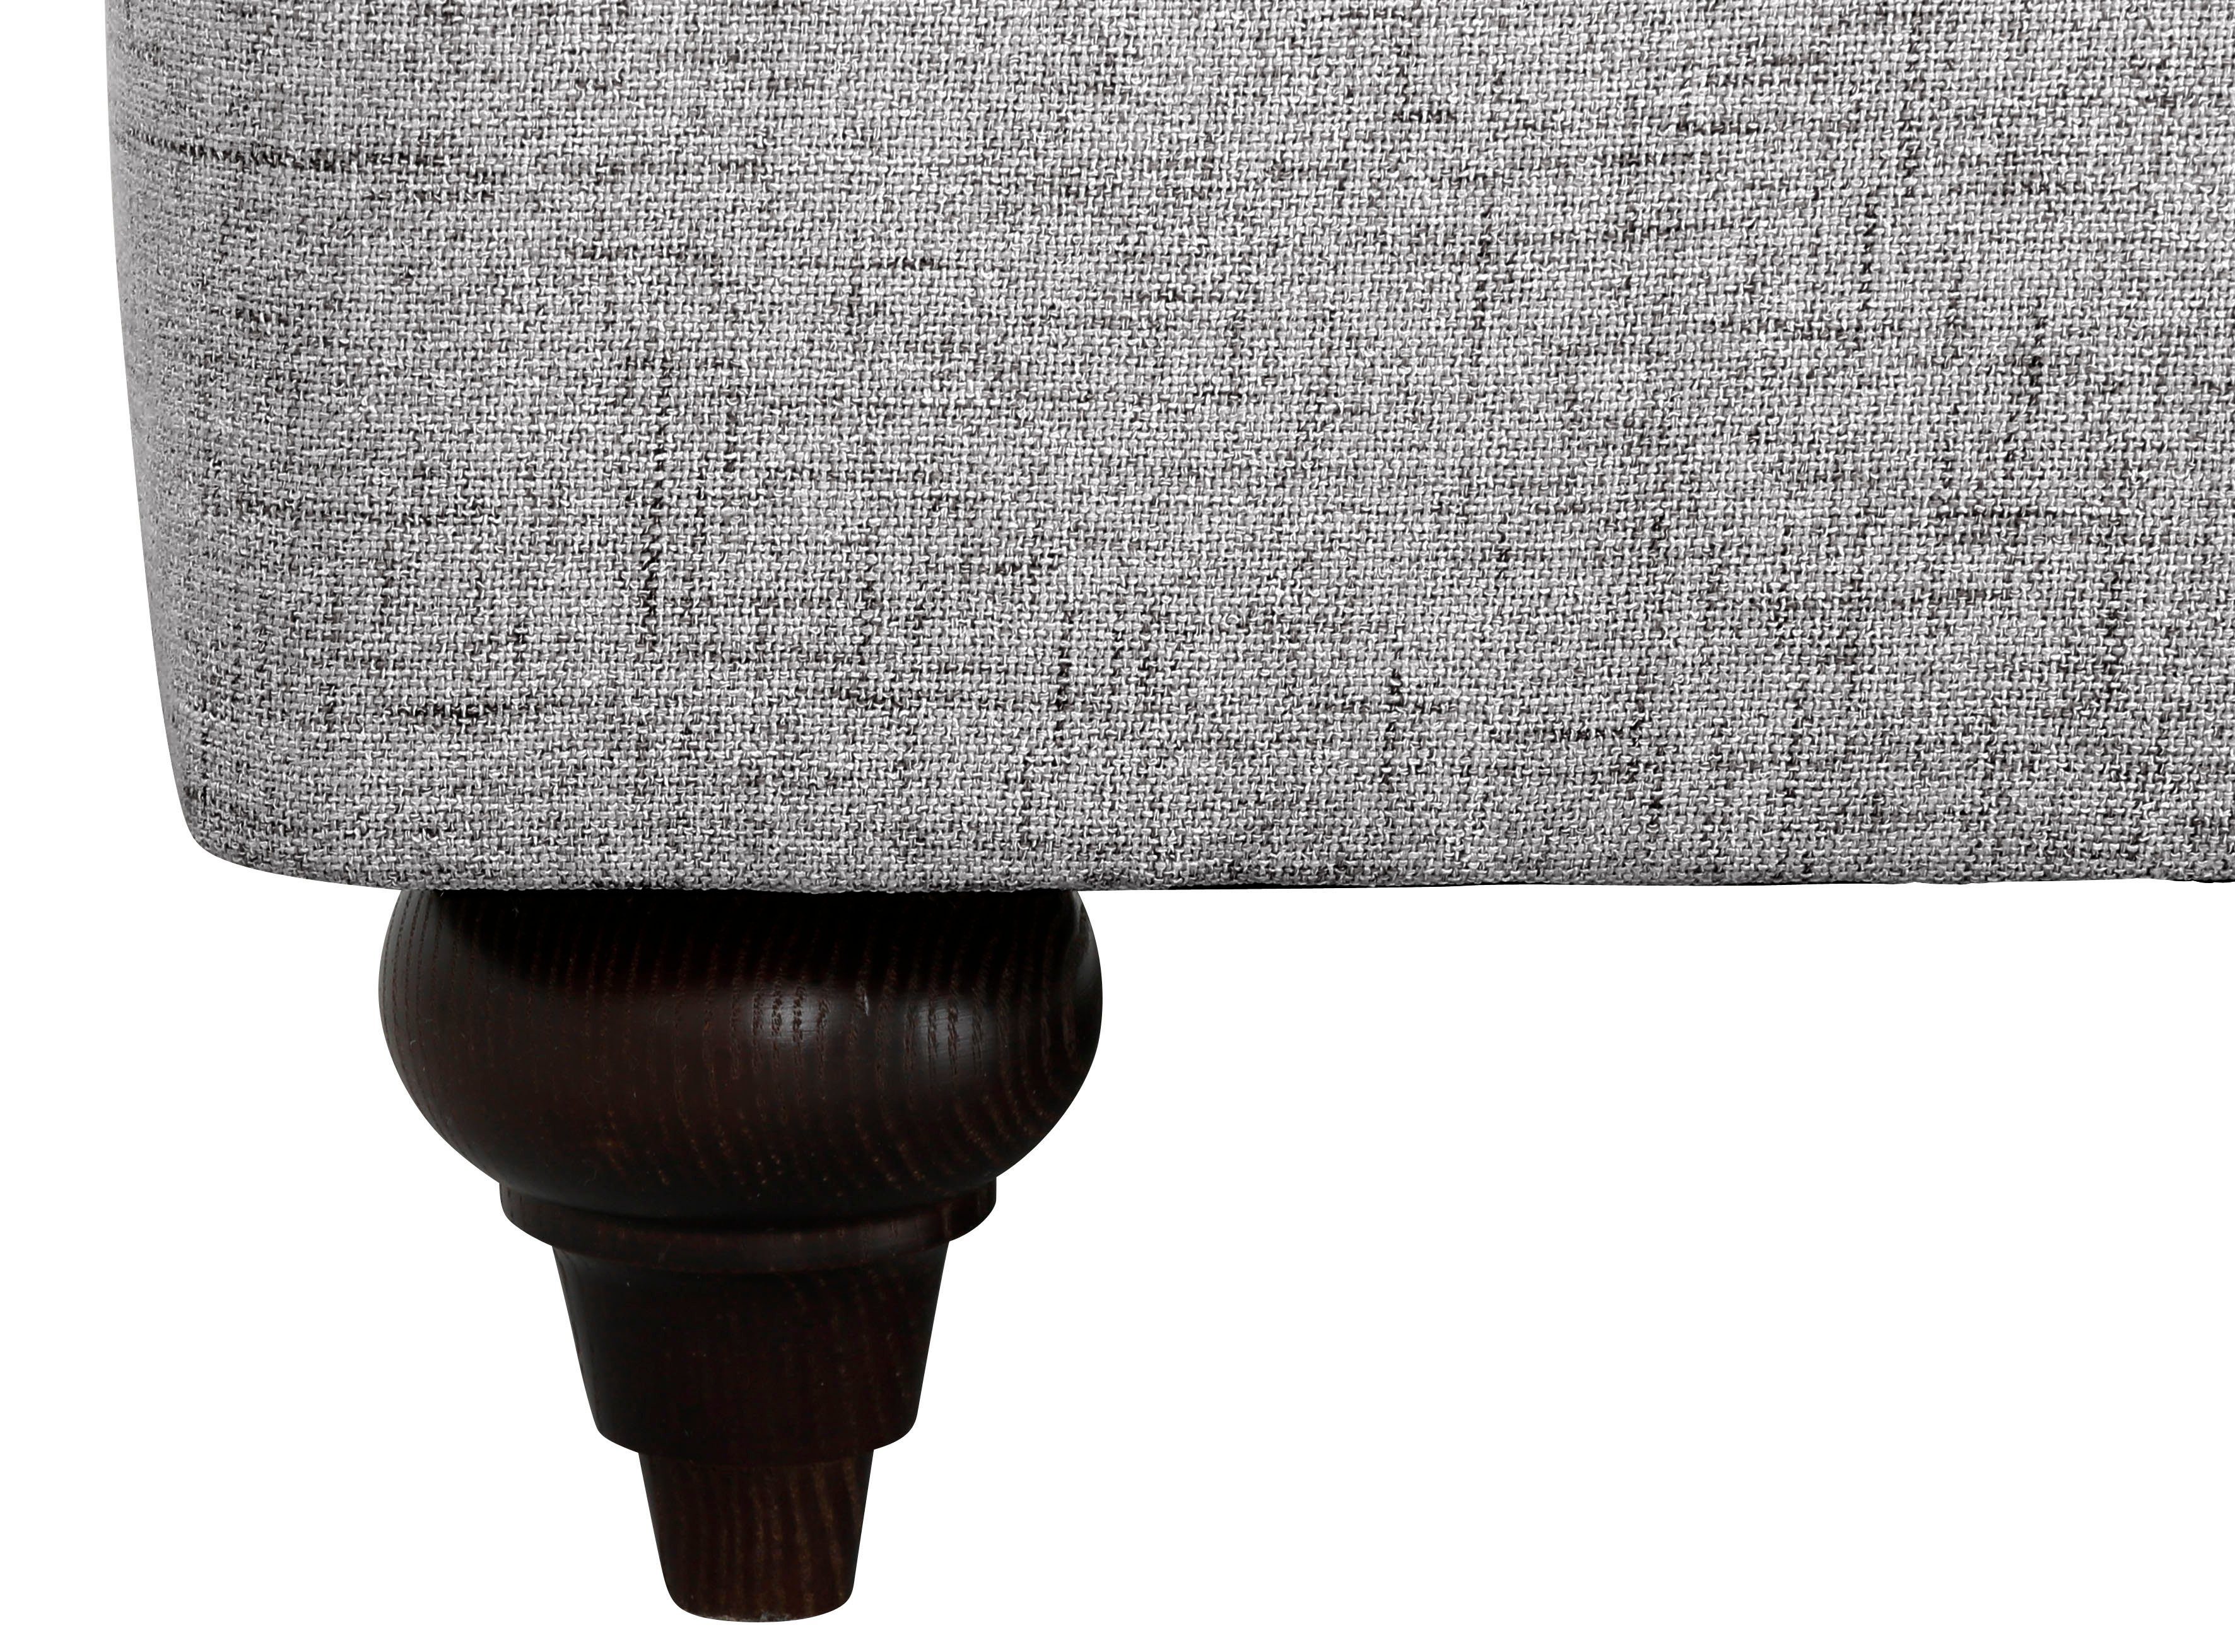 erhältlich light verschiedenen in 2-Sitzer affaire Bloomer, mit hochwertigem Kaltschaum, Home Farben grey